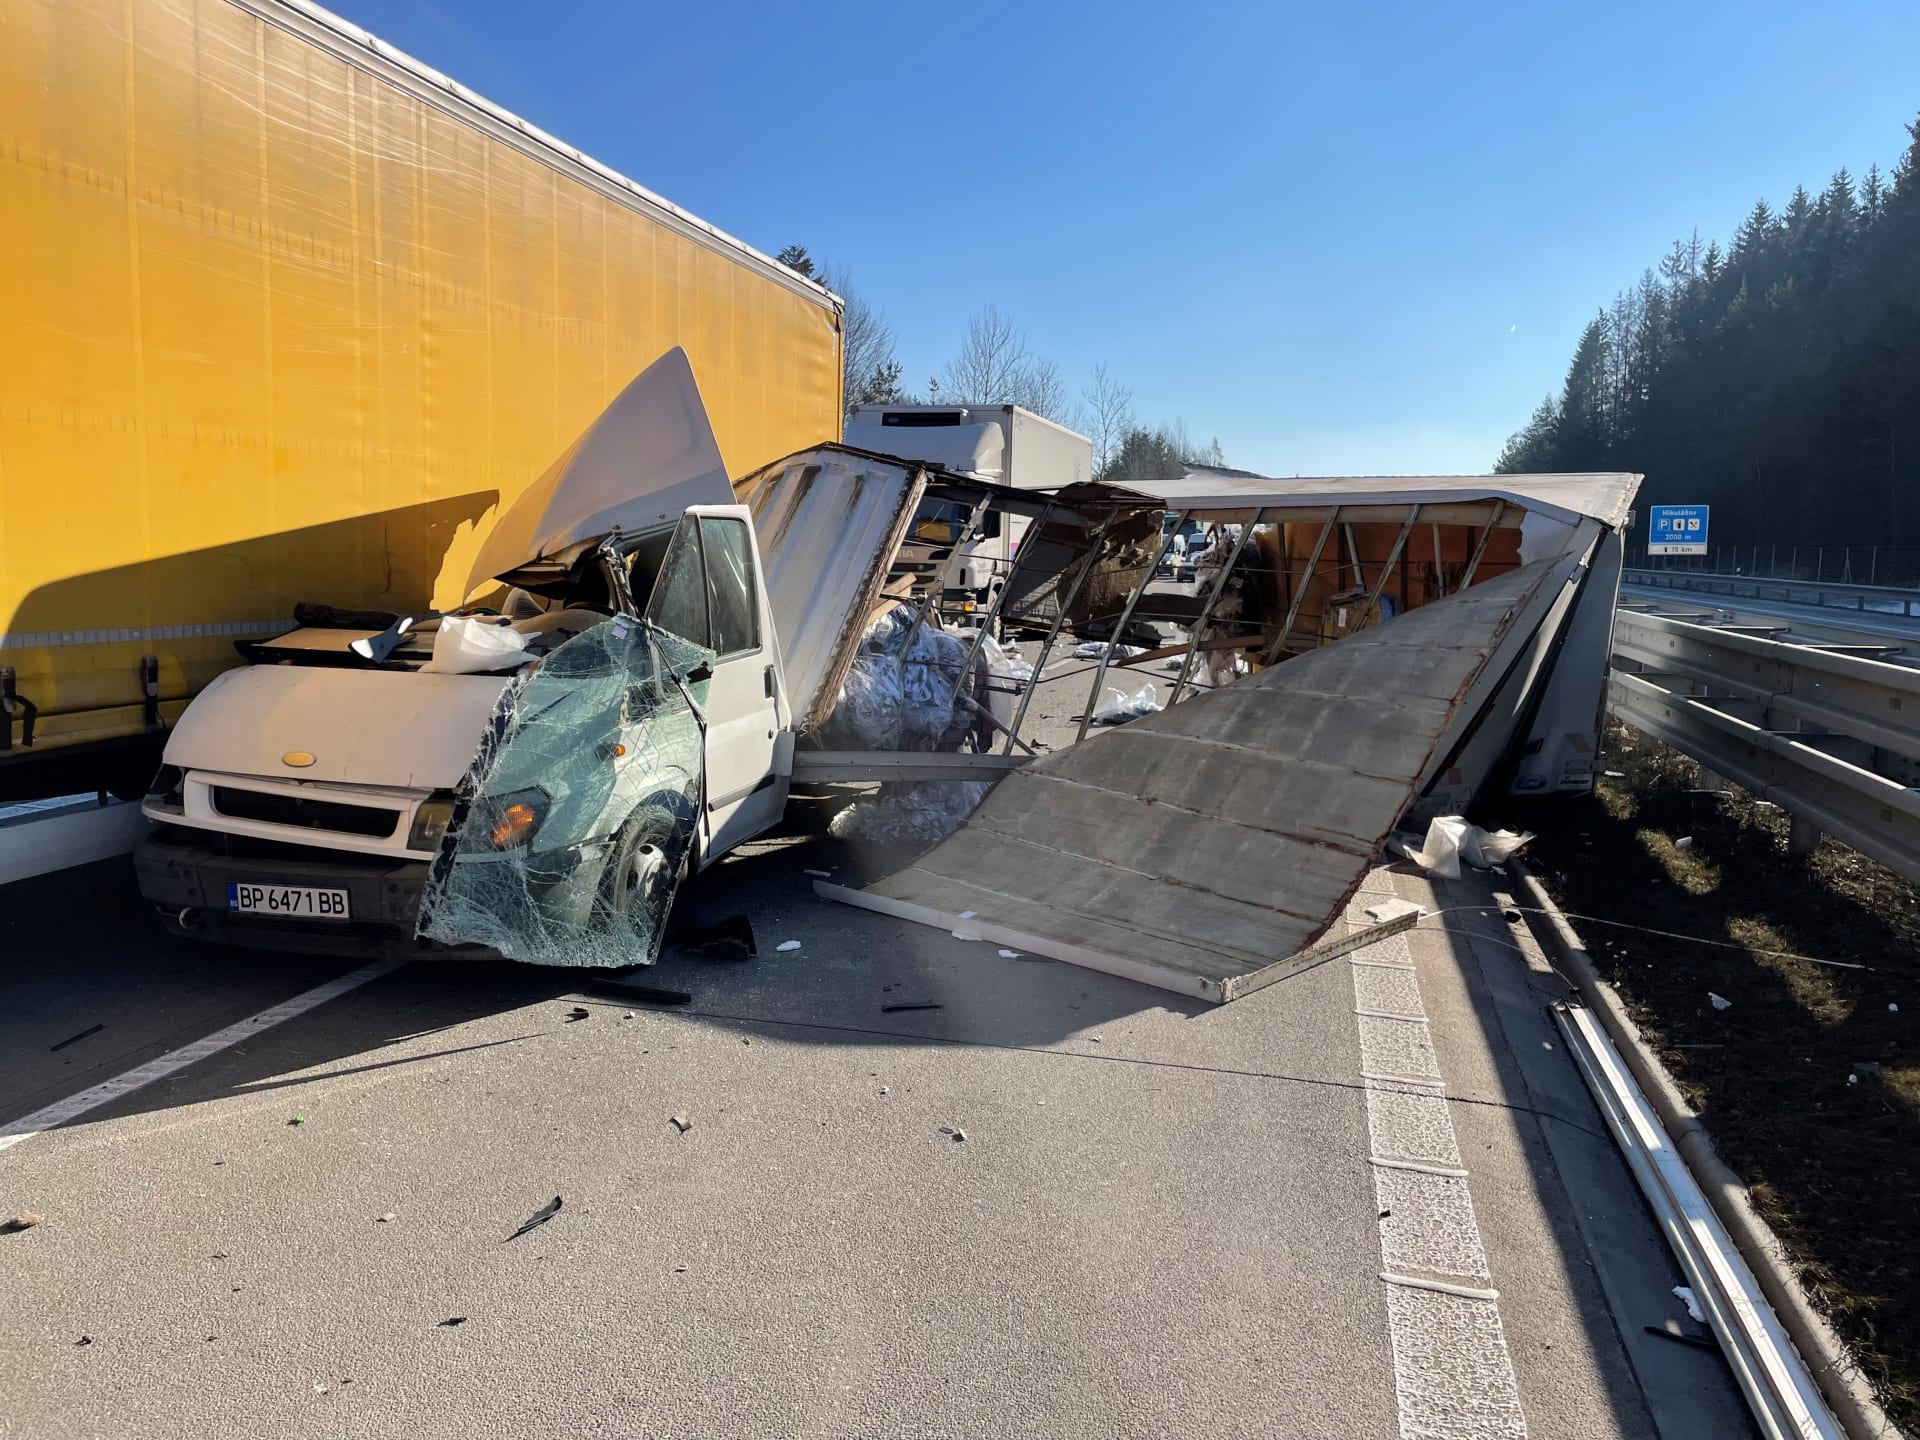 Další dodávka narazila do nákladního auta po 09:30 mezi sjezdy na 90. kilometru v Humpolci a 104. kilometru u Větrného Jeníkov.